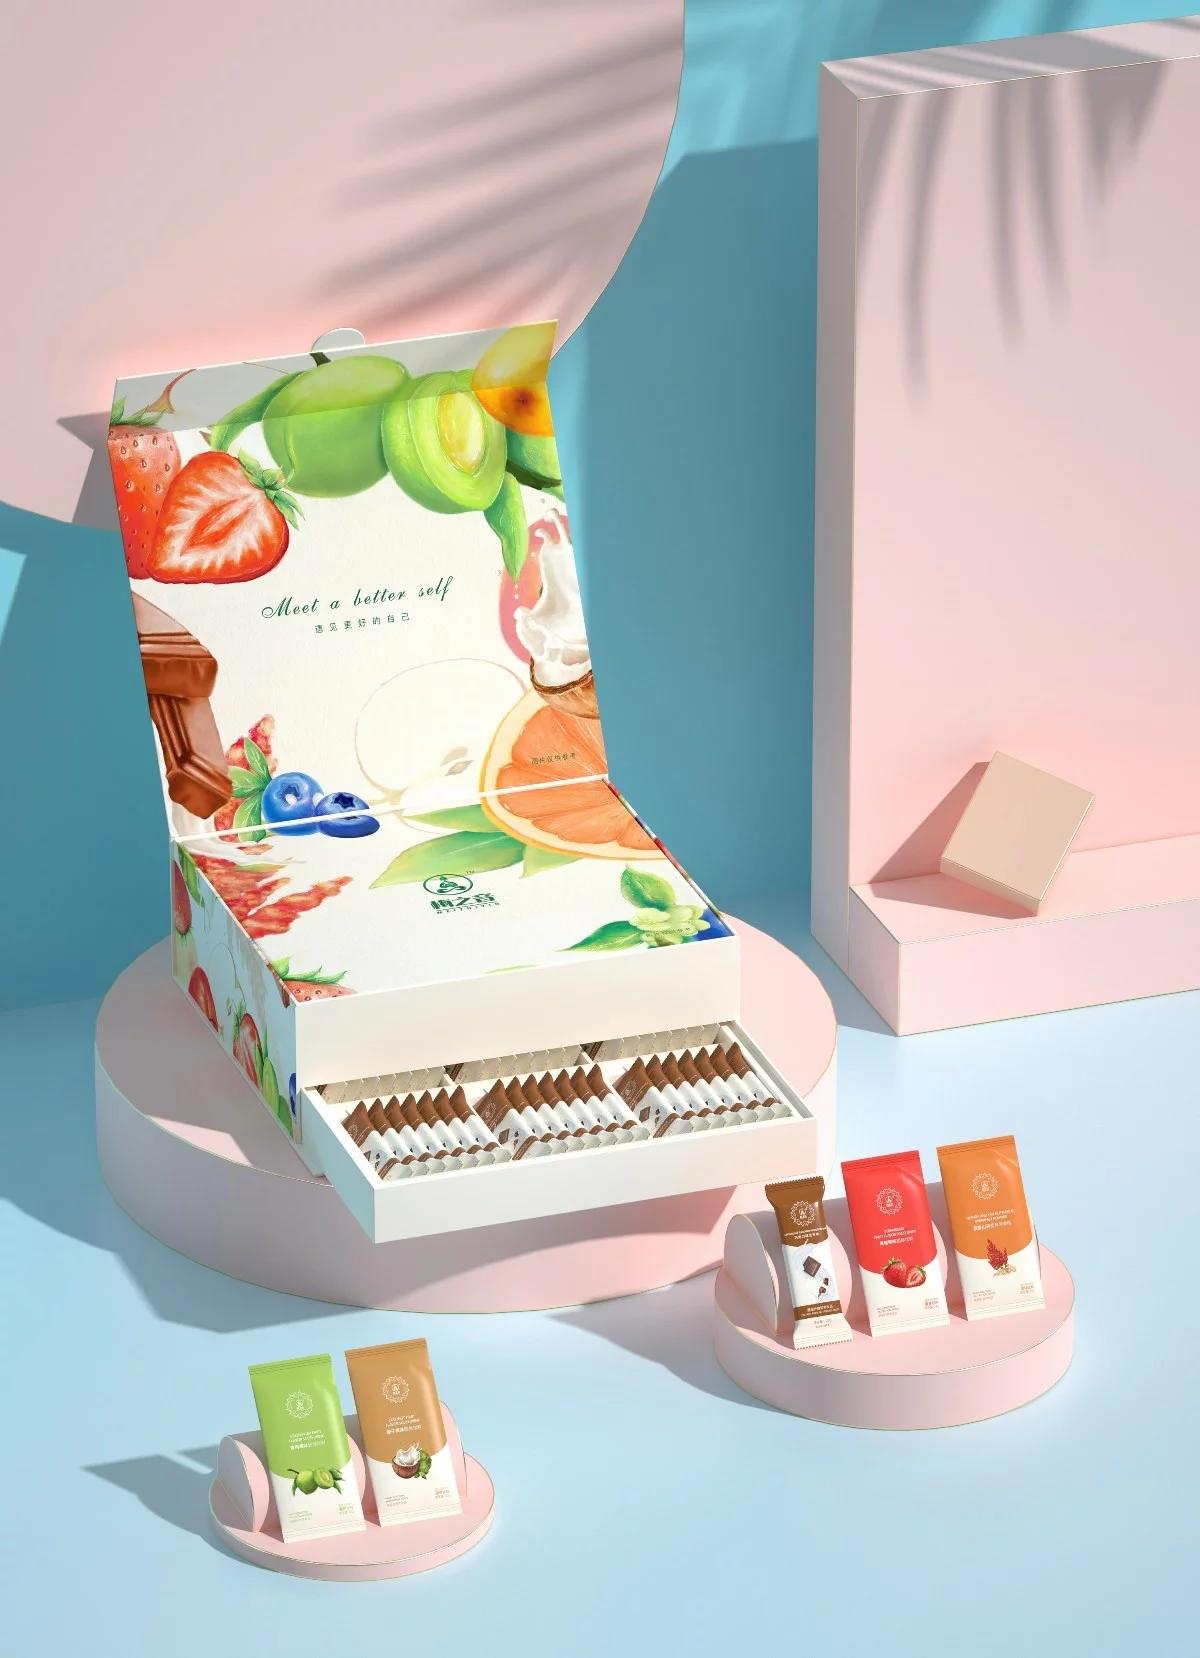 风格新颖特色靓丽的水果系列固体饮料礼盒包装设计